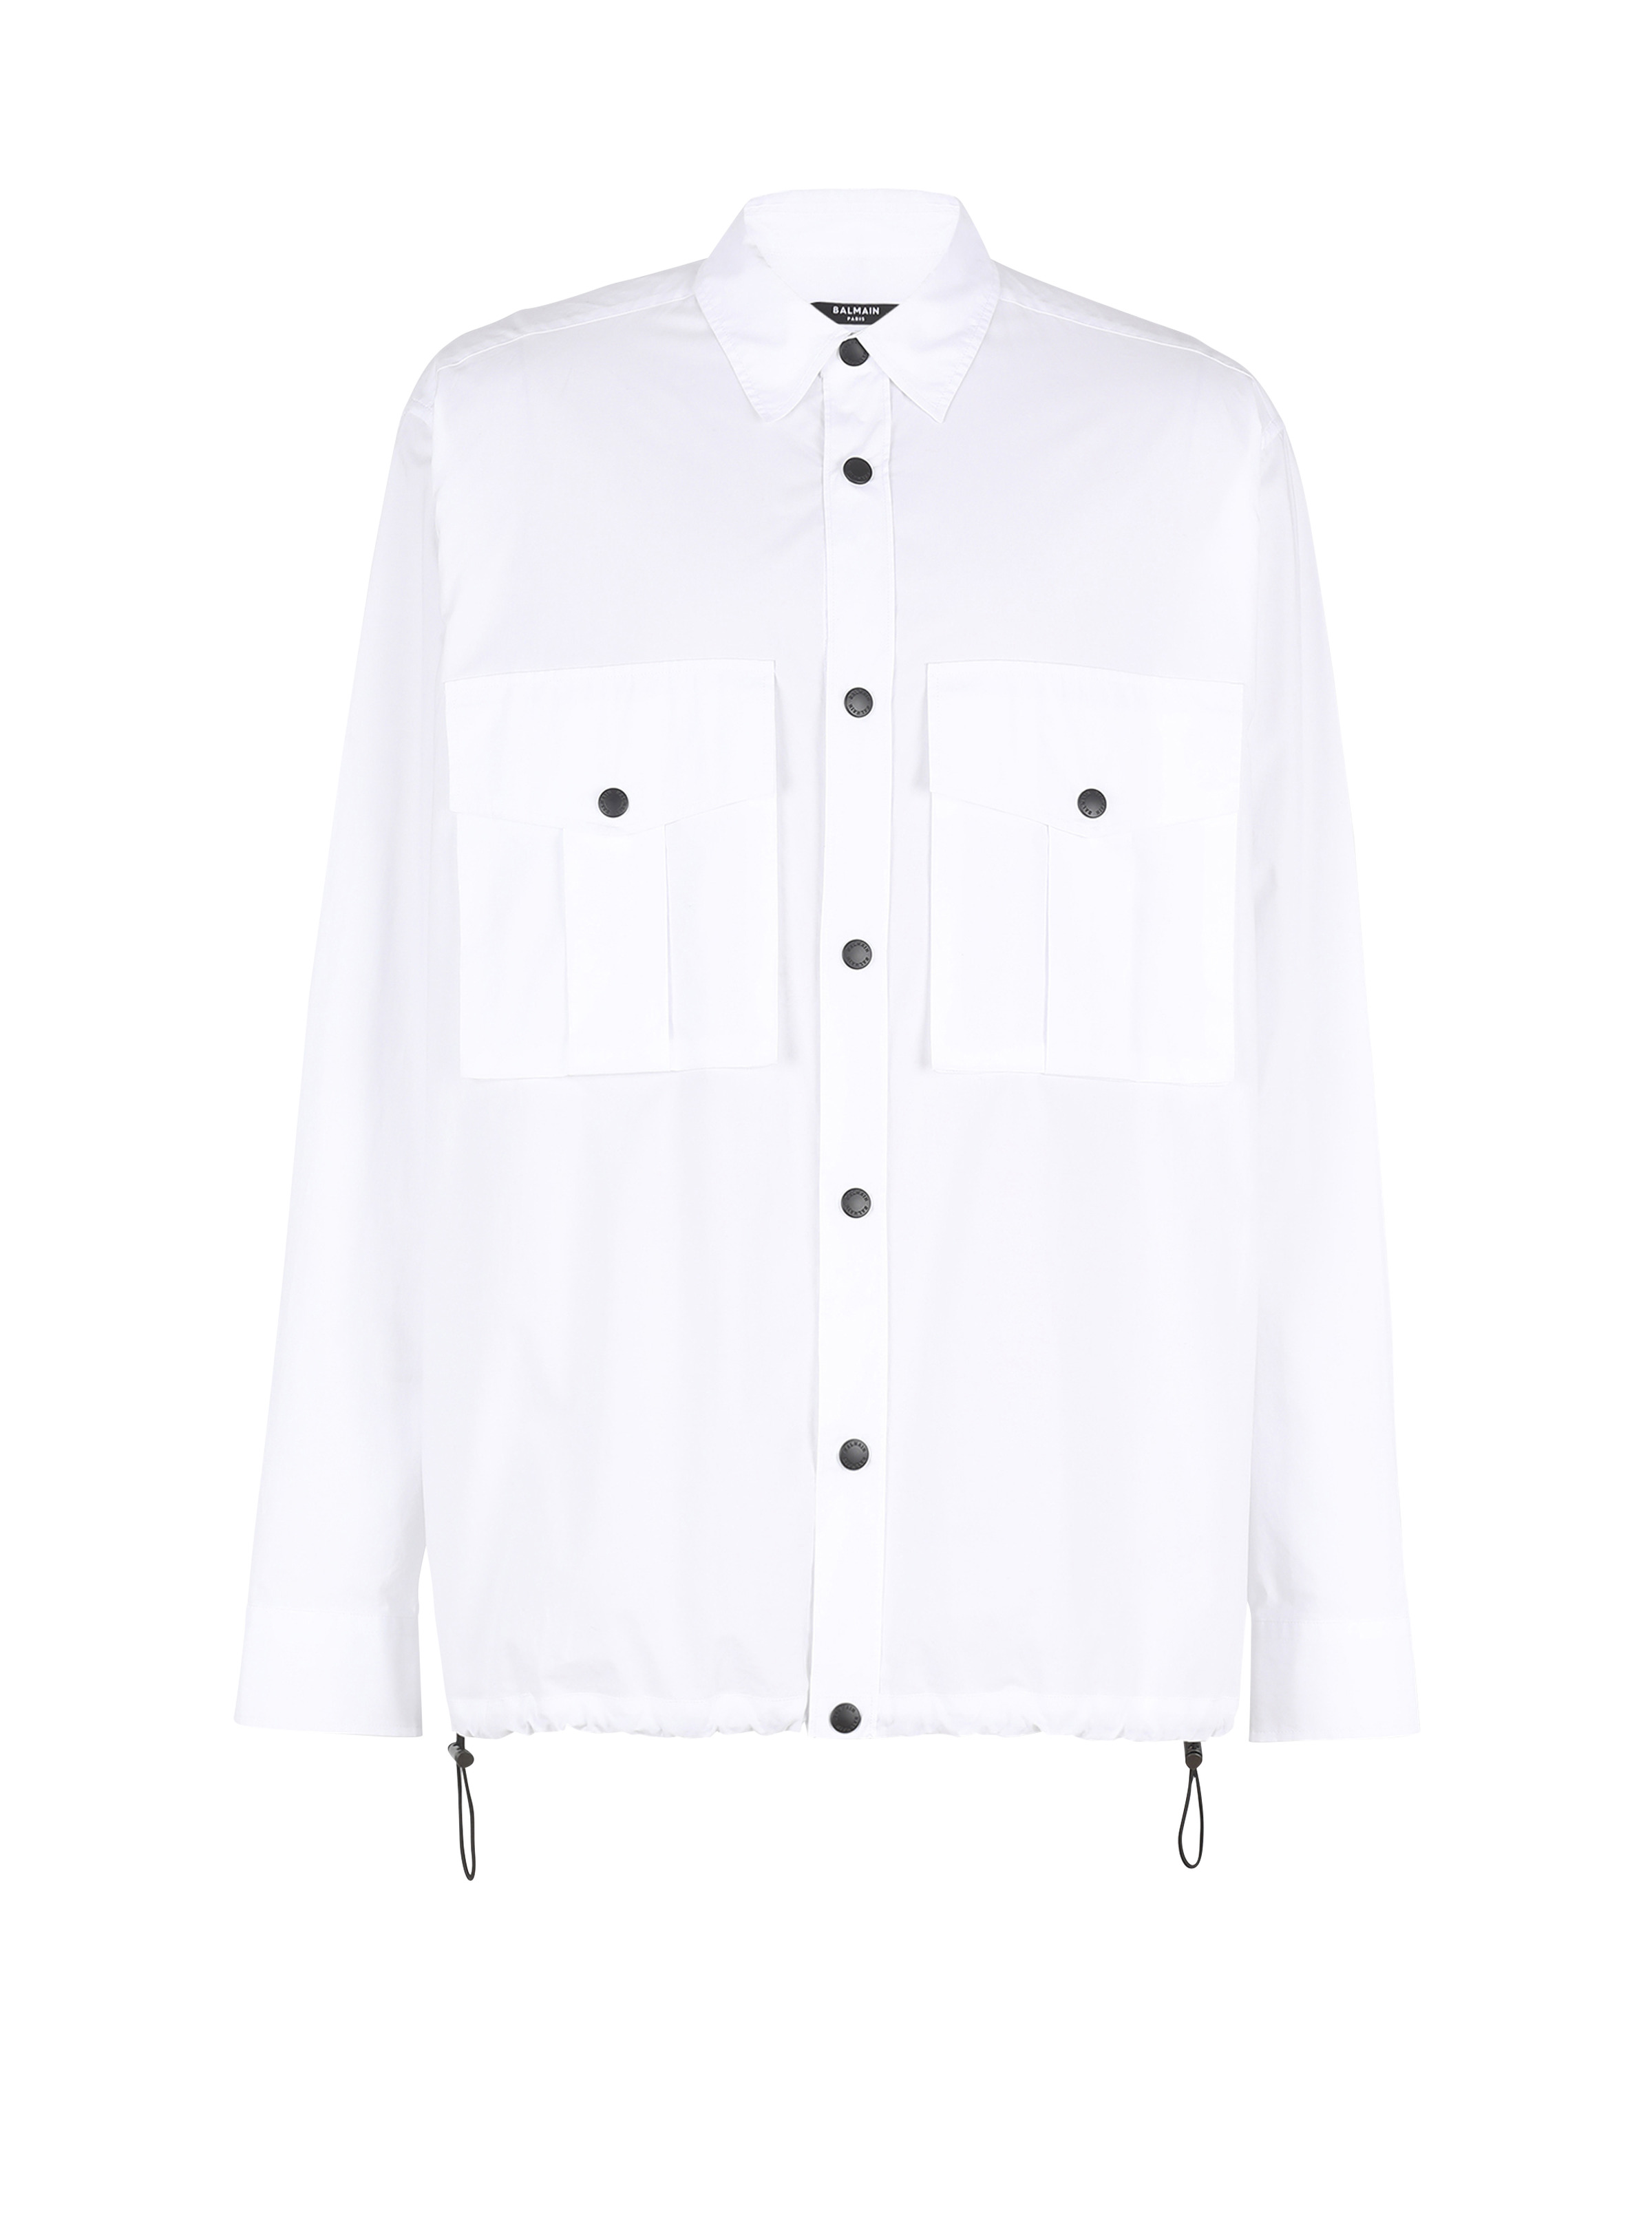 Nylon shirt with Balmain monogram - 1